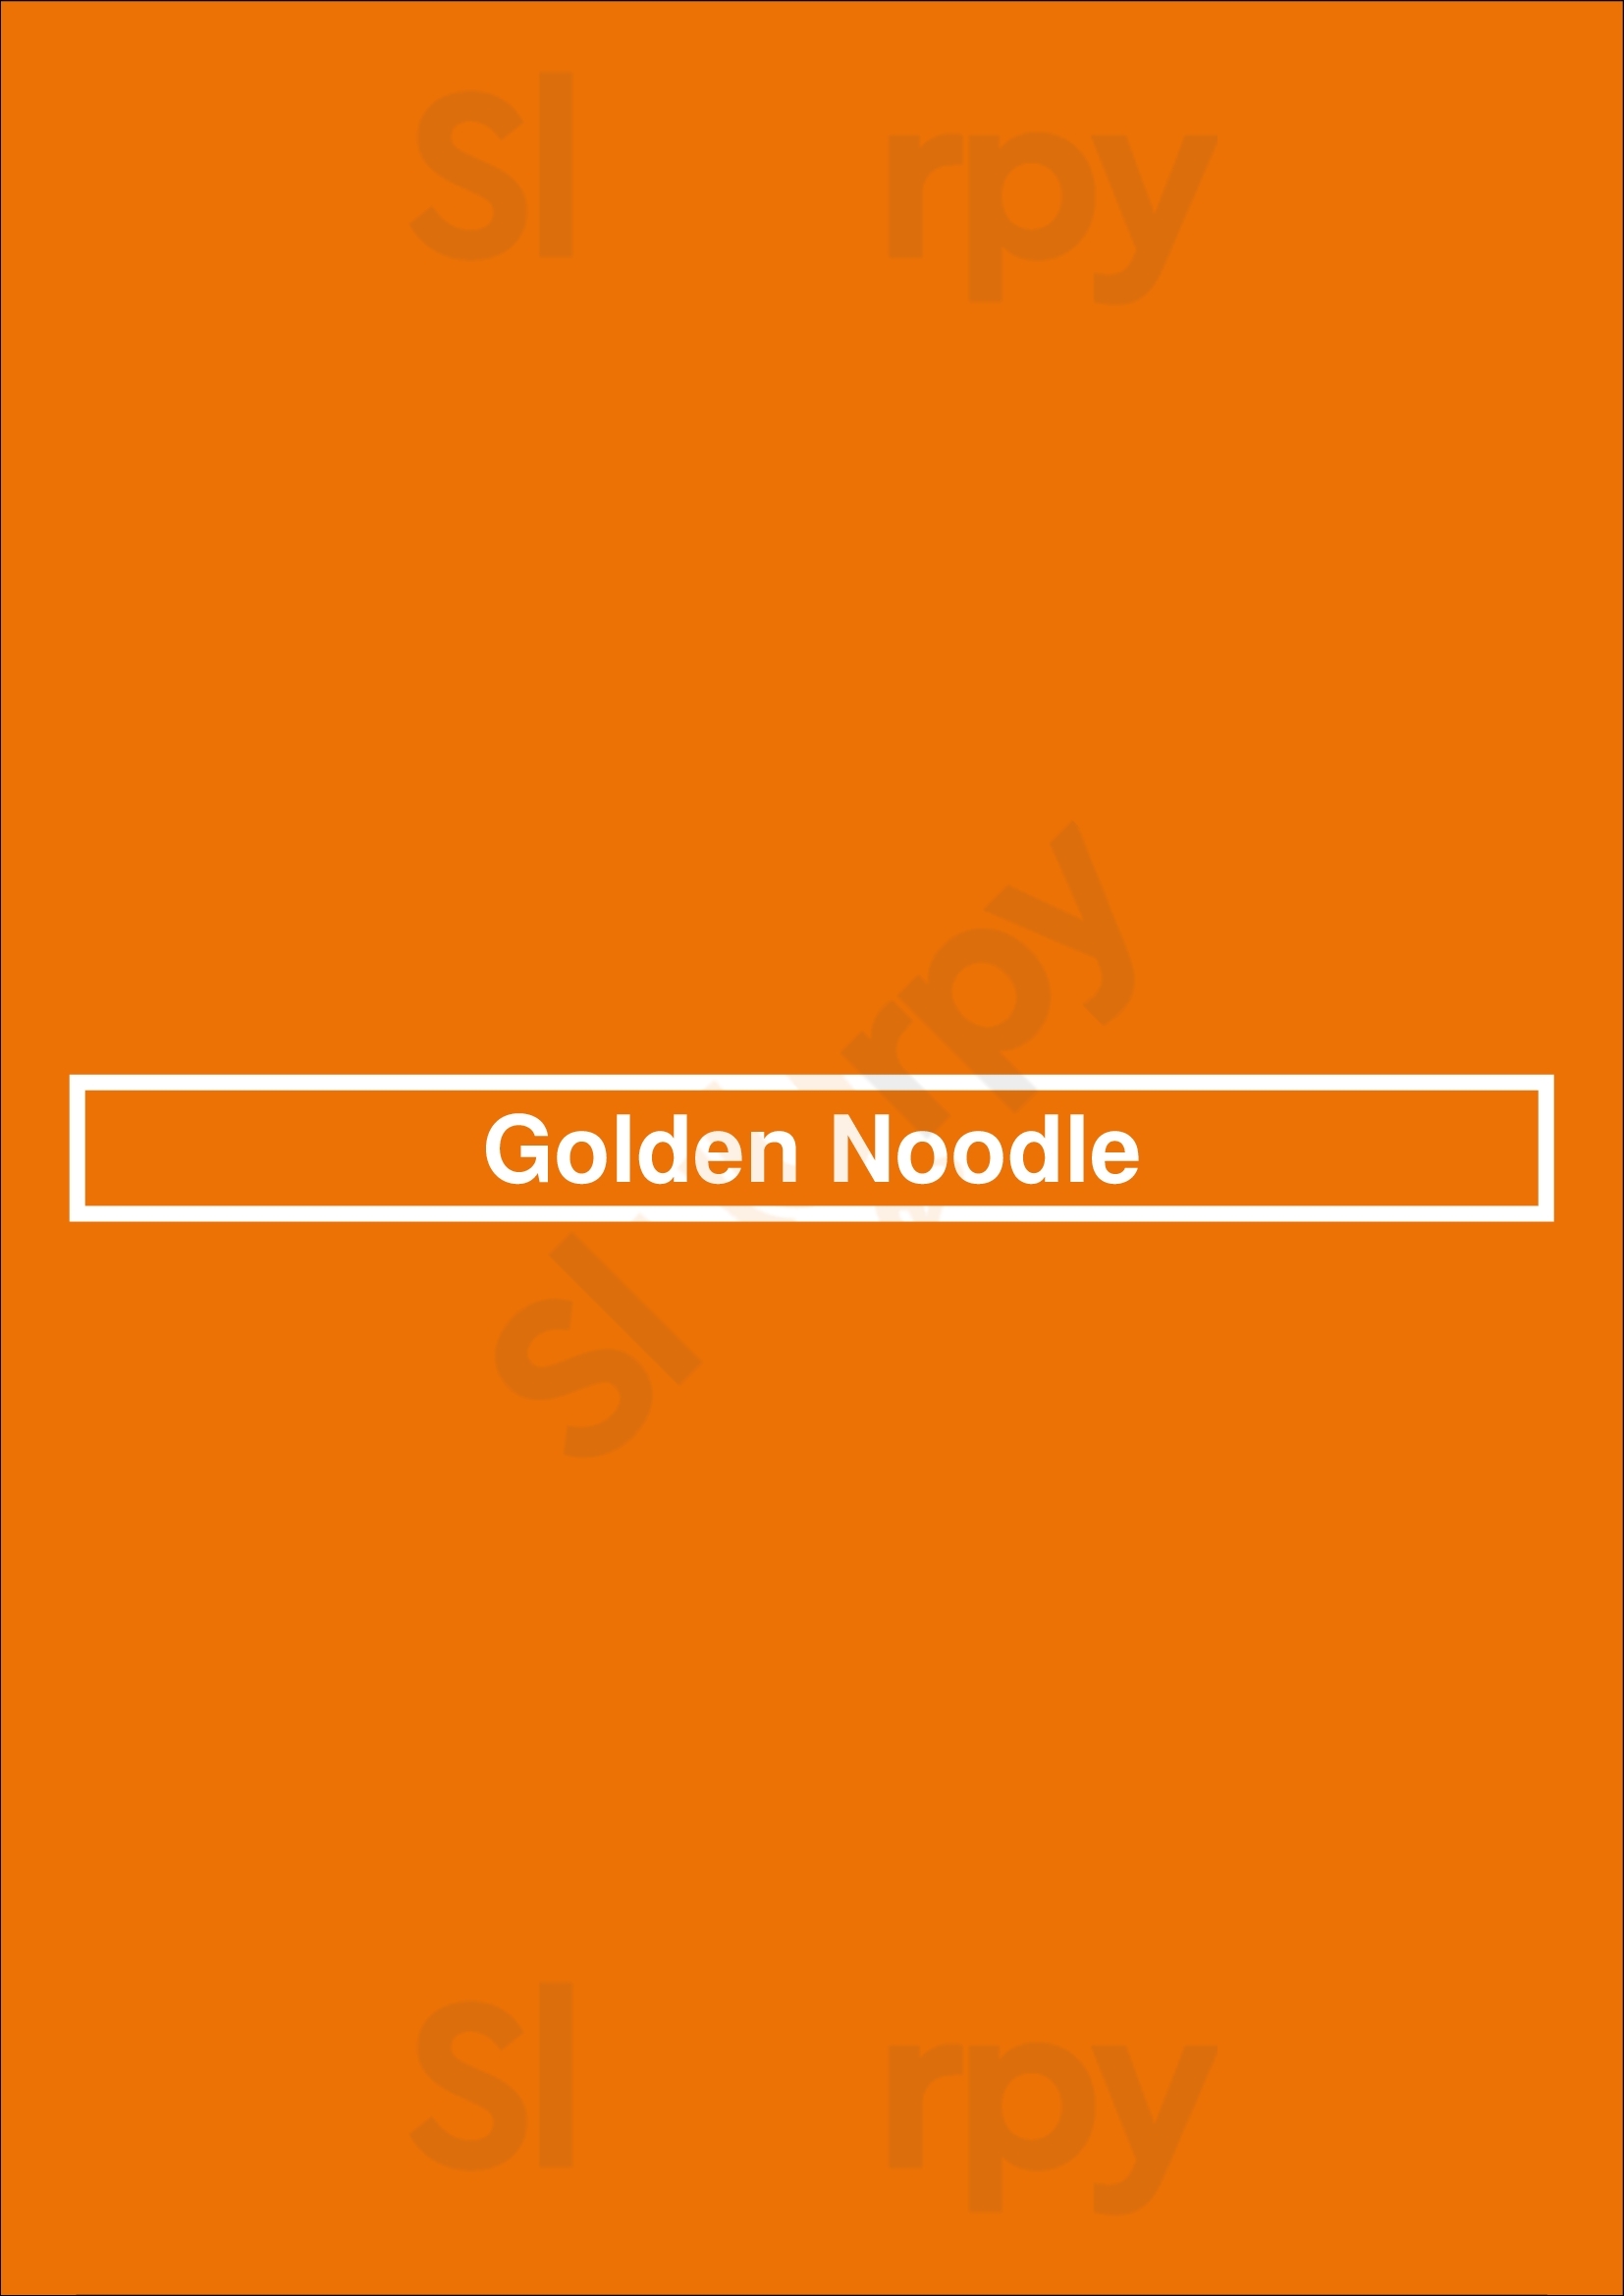 Golden Noodle London Menu - 1